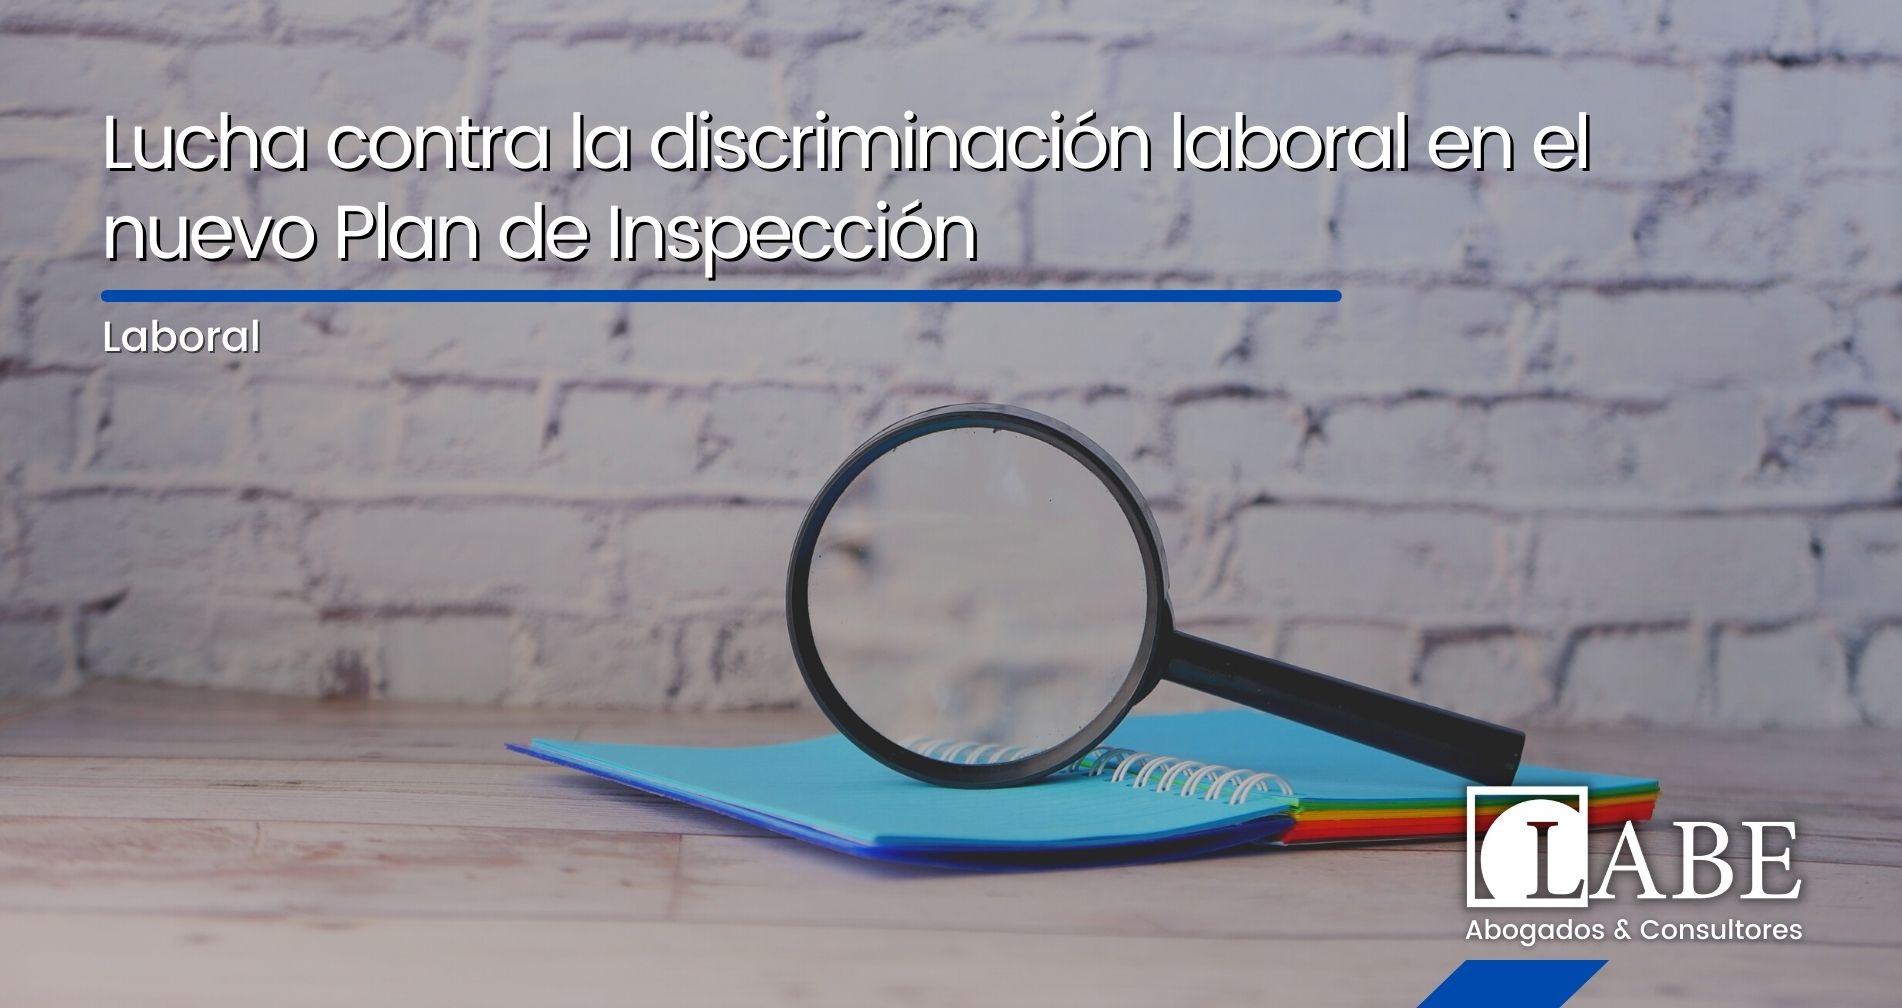 Lucha contra la discriminación laboral en el nuevo Plan de Inspección